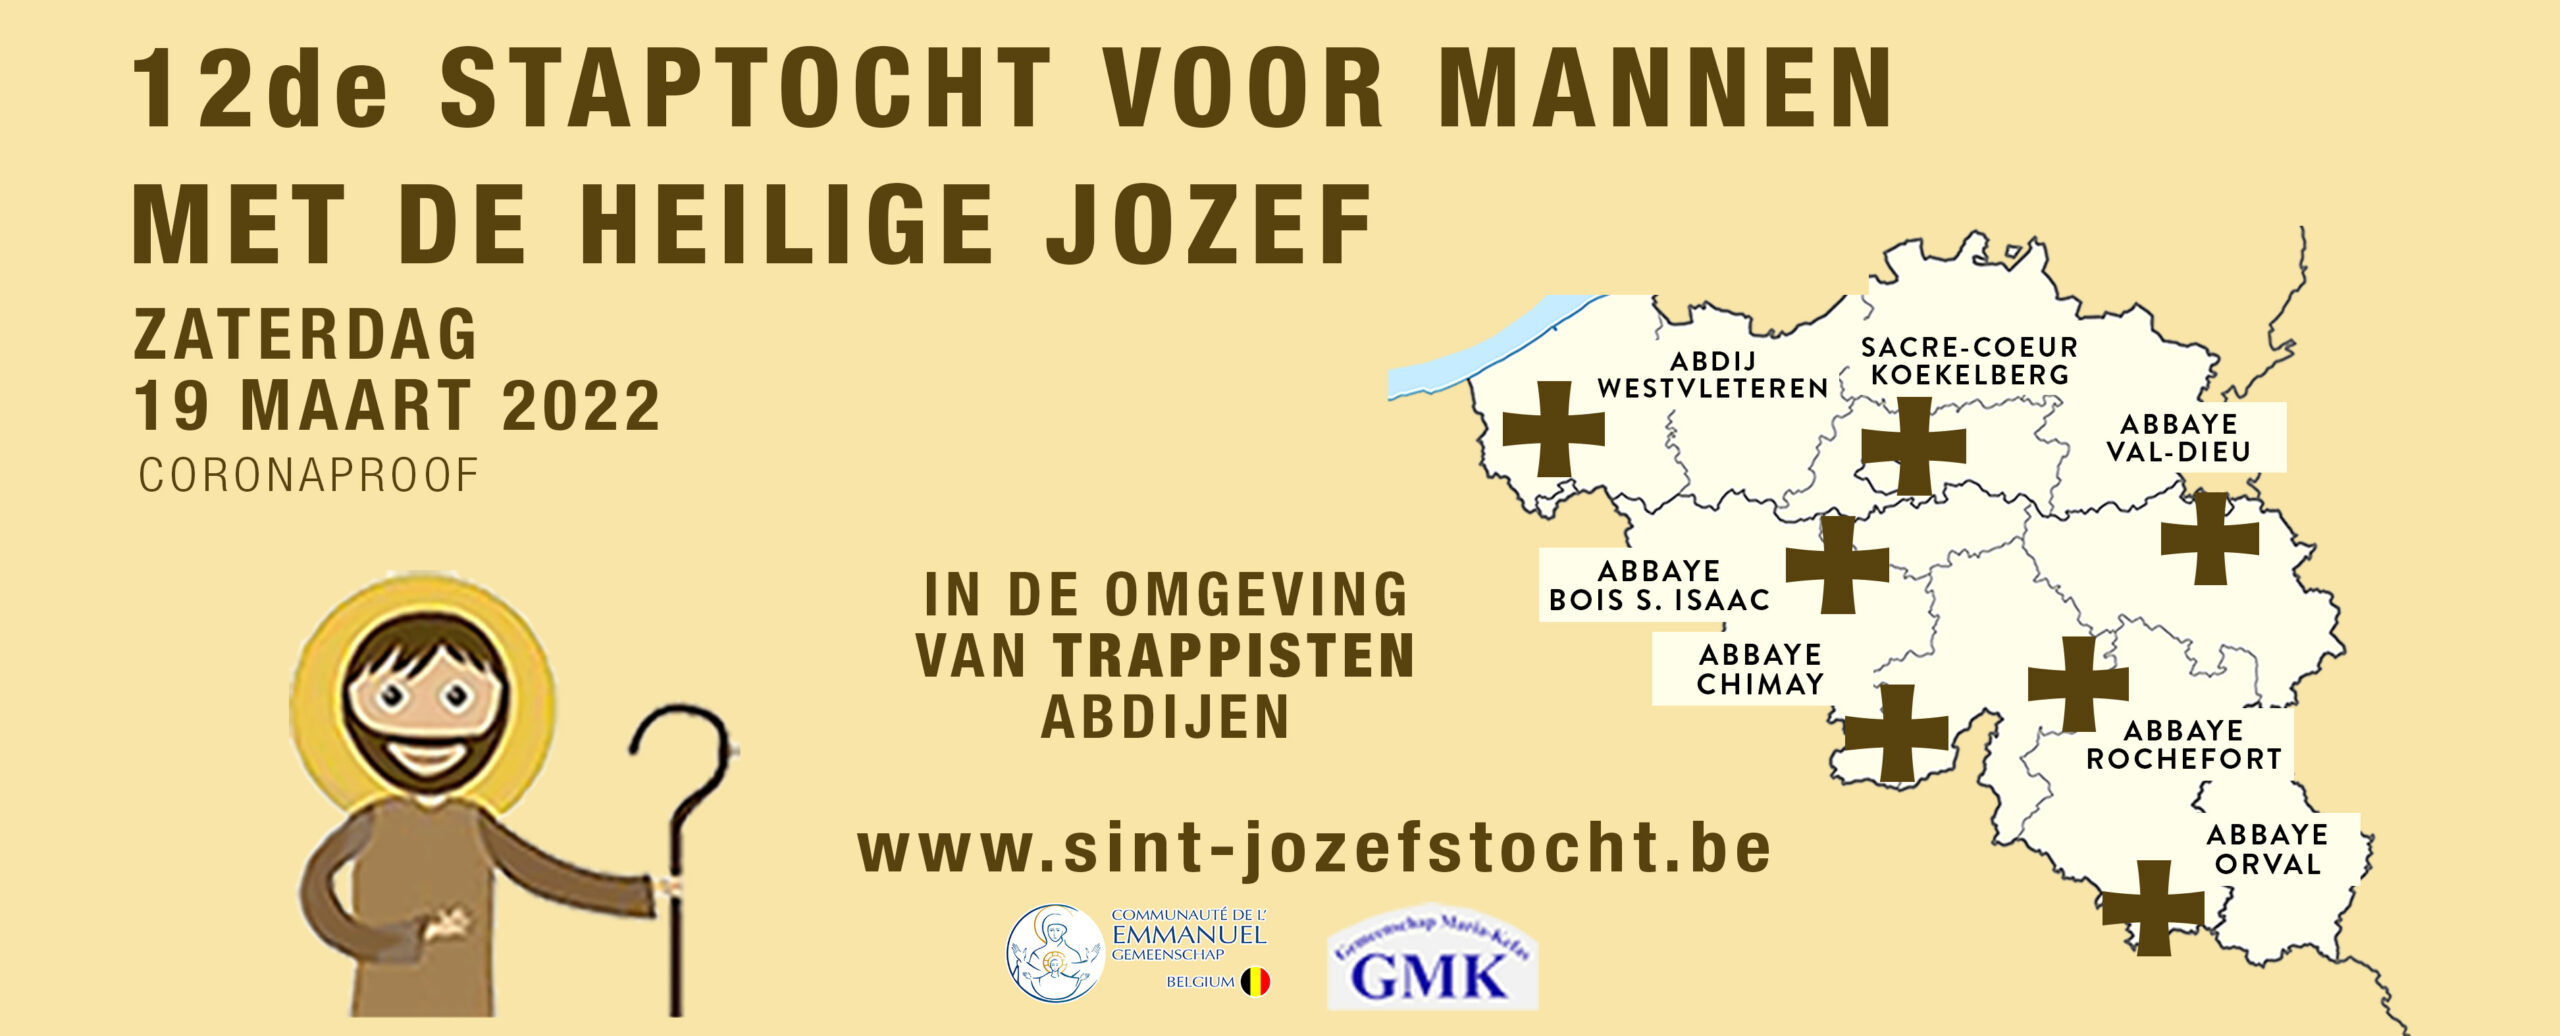 Locaties voor de Sint-Jozefstocht in 2022 voor heel België